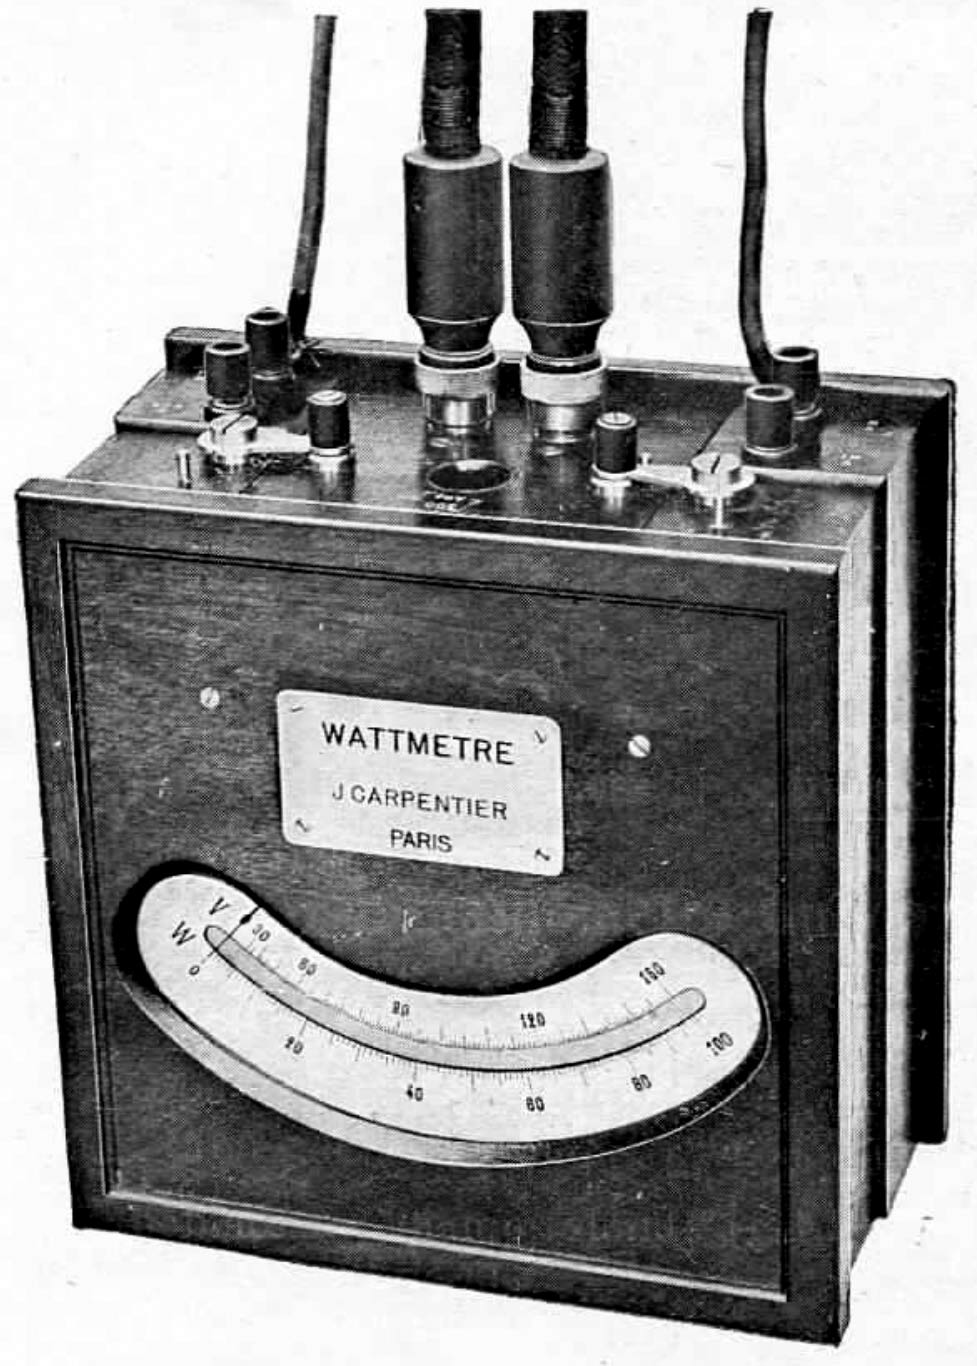 Ligne Maginot - Ateliers Jules Carpentier - Voltmètre-wattmetre de précision
Catalogue des Ateliers Jules Carpentier de 1920 